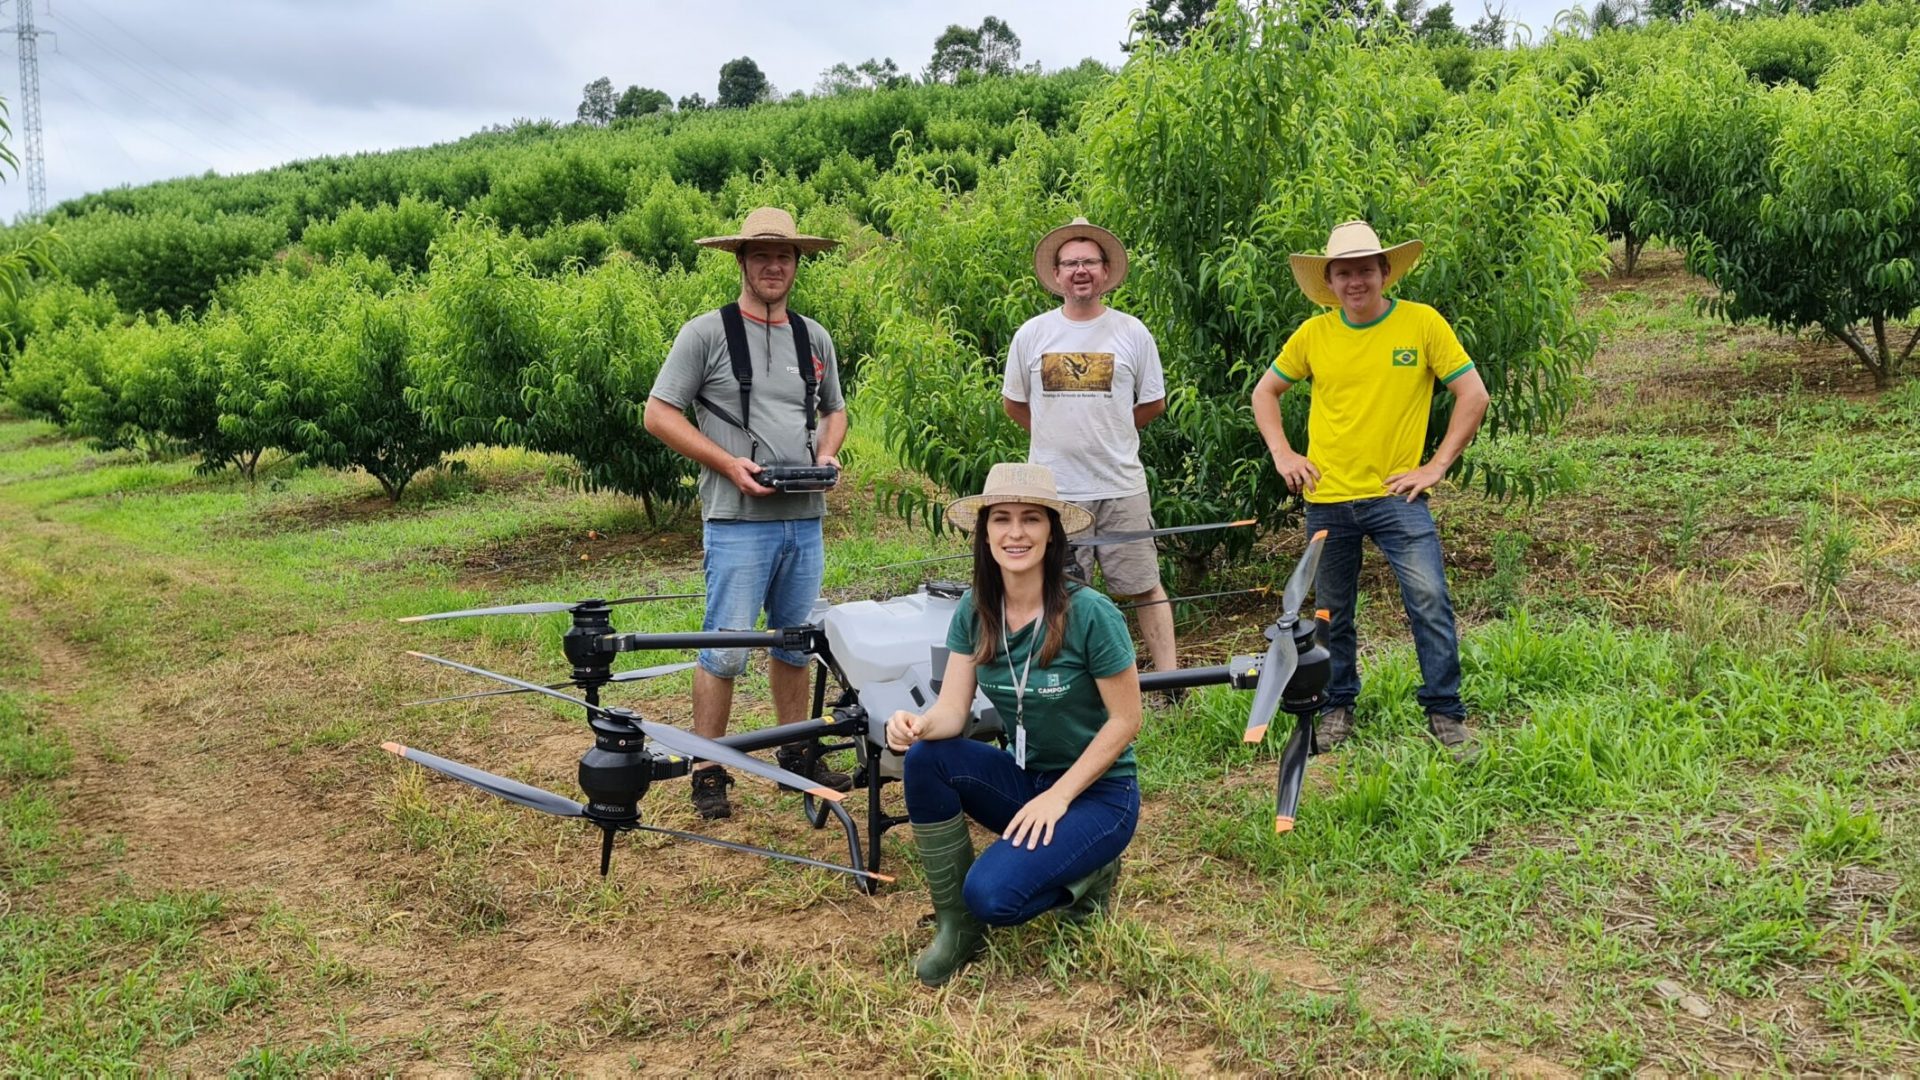 entrega técnica drone agrícola